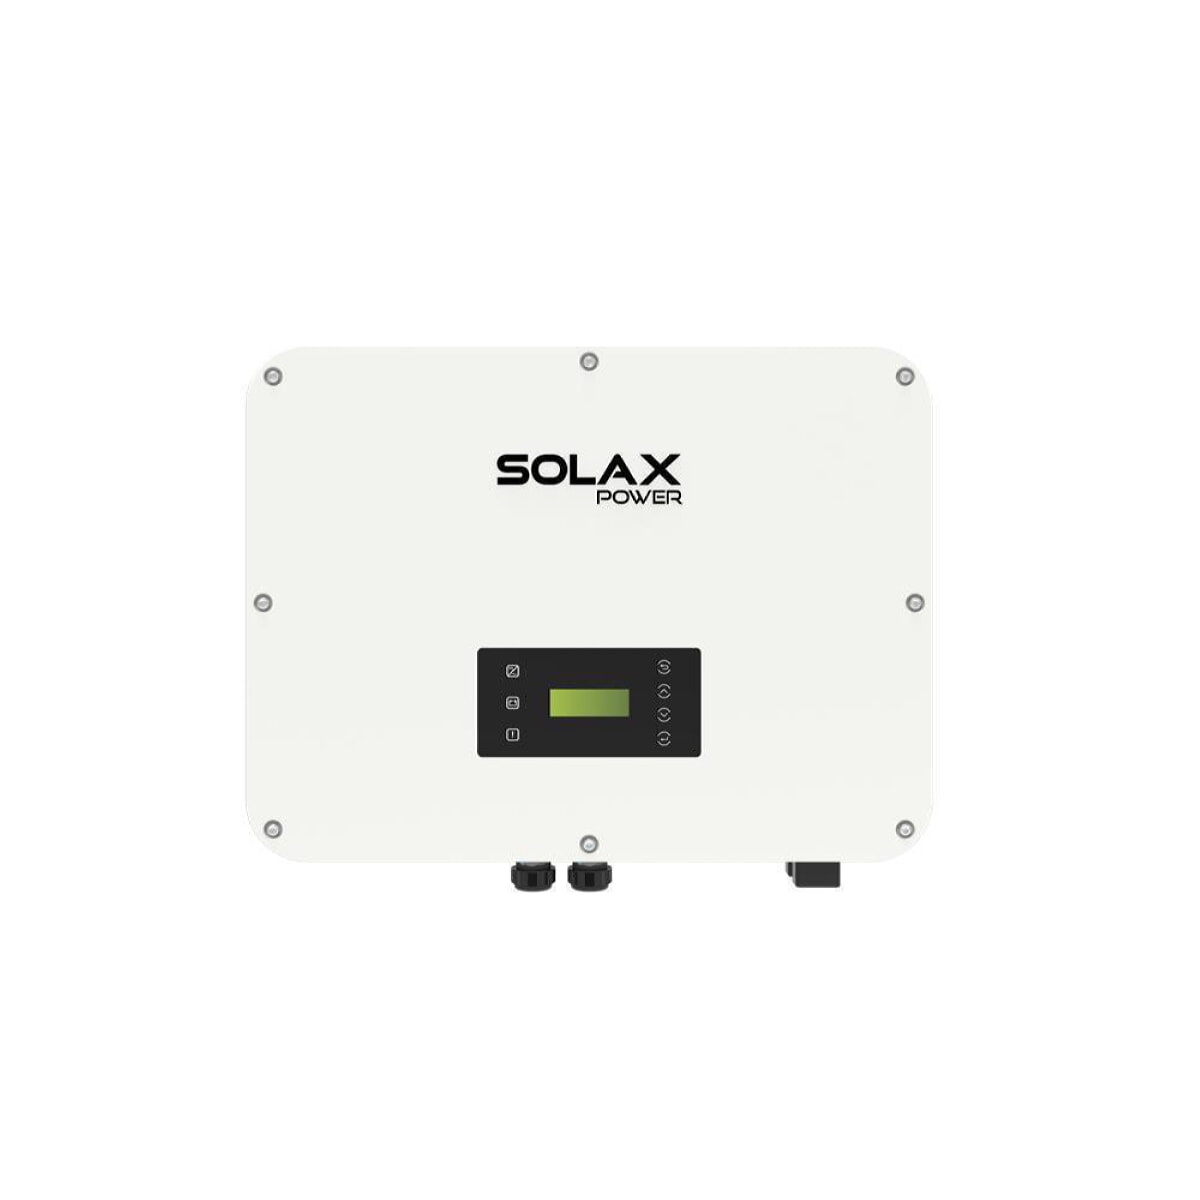 SolaX X3 Ultra 25K three-phase hybrid inverter